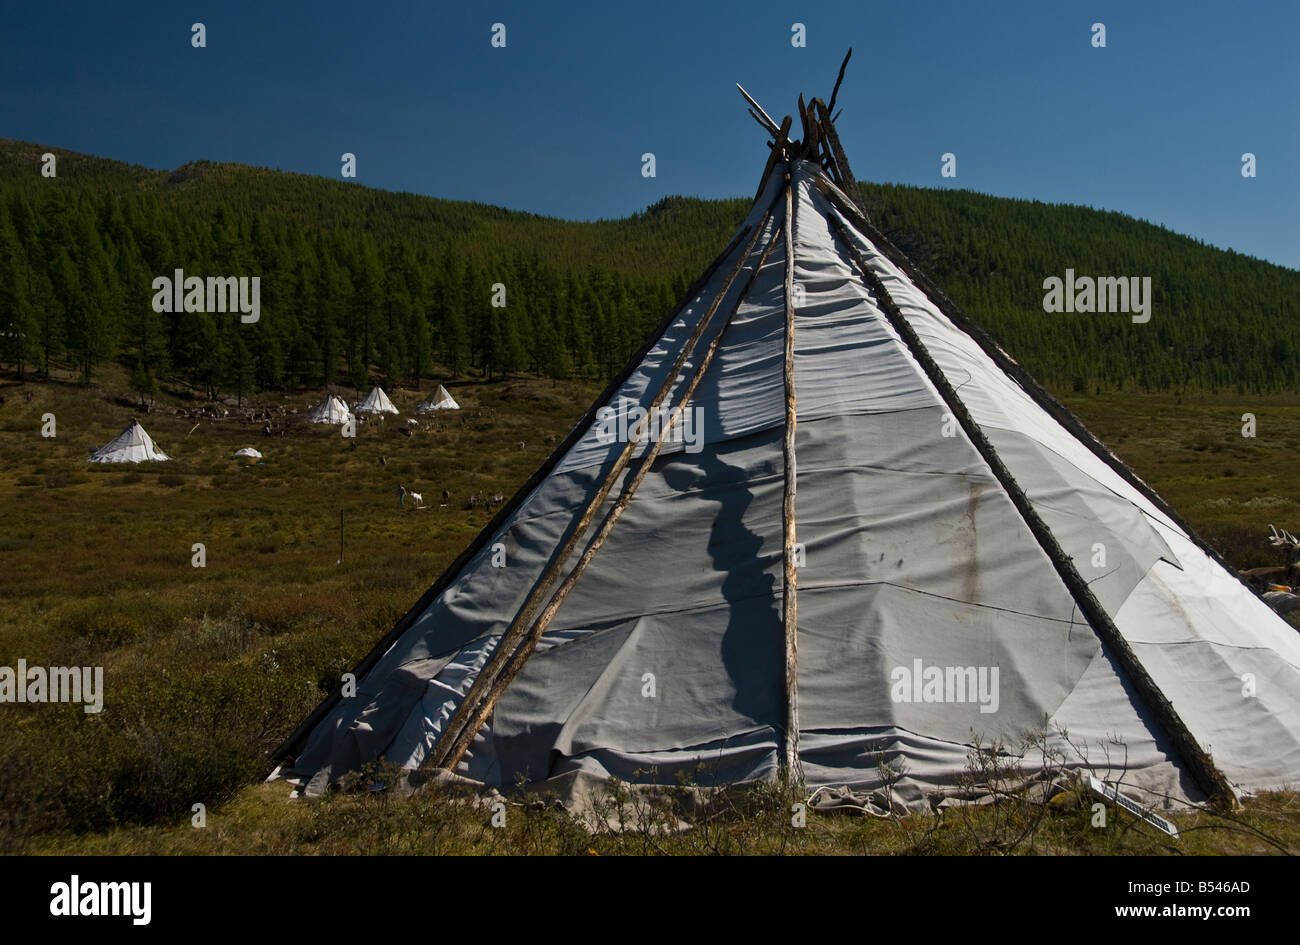 Tipi Tsaatan Mongolie du Nord de campement Photo Stock - Alamy